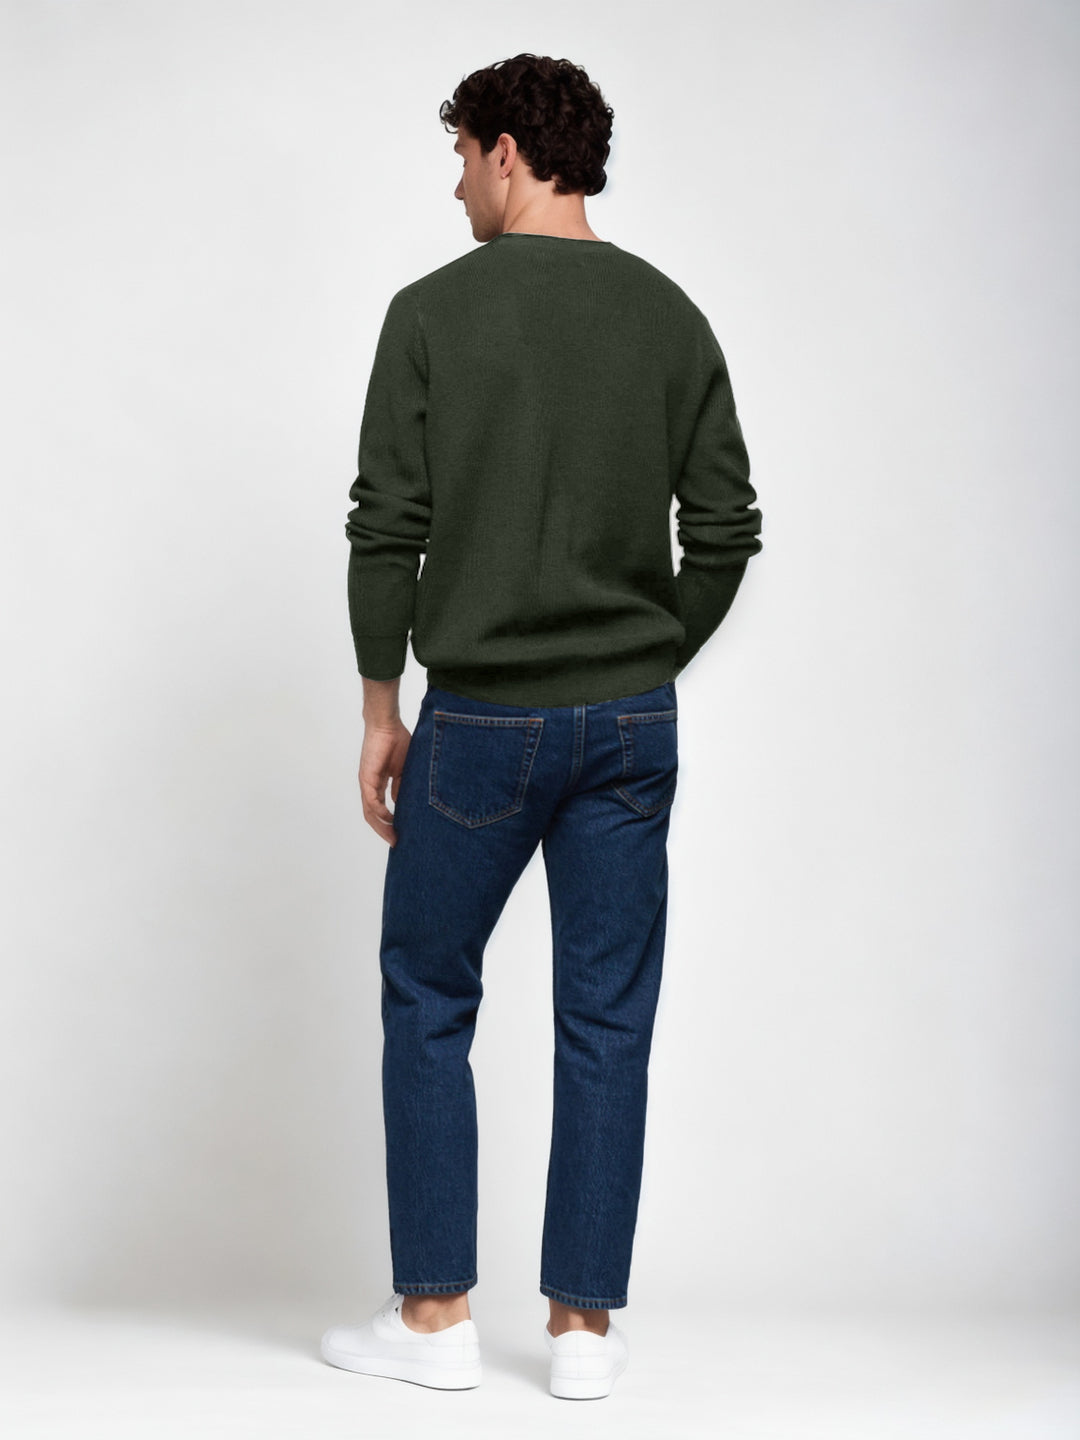 Hemsters Olive green Knitted Full Sleevs Sweatshirt For men